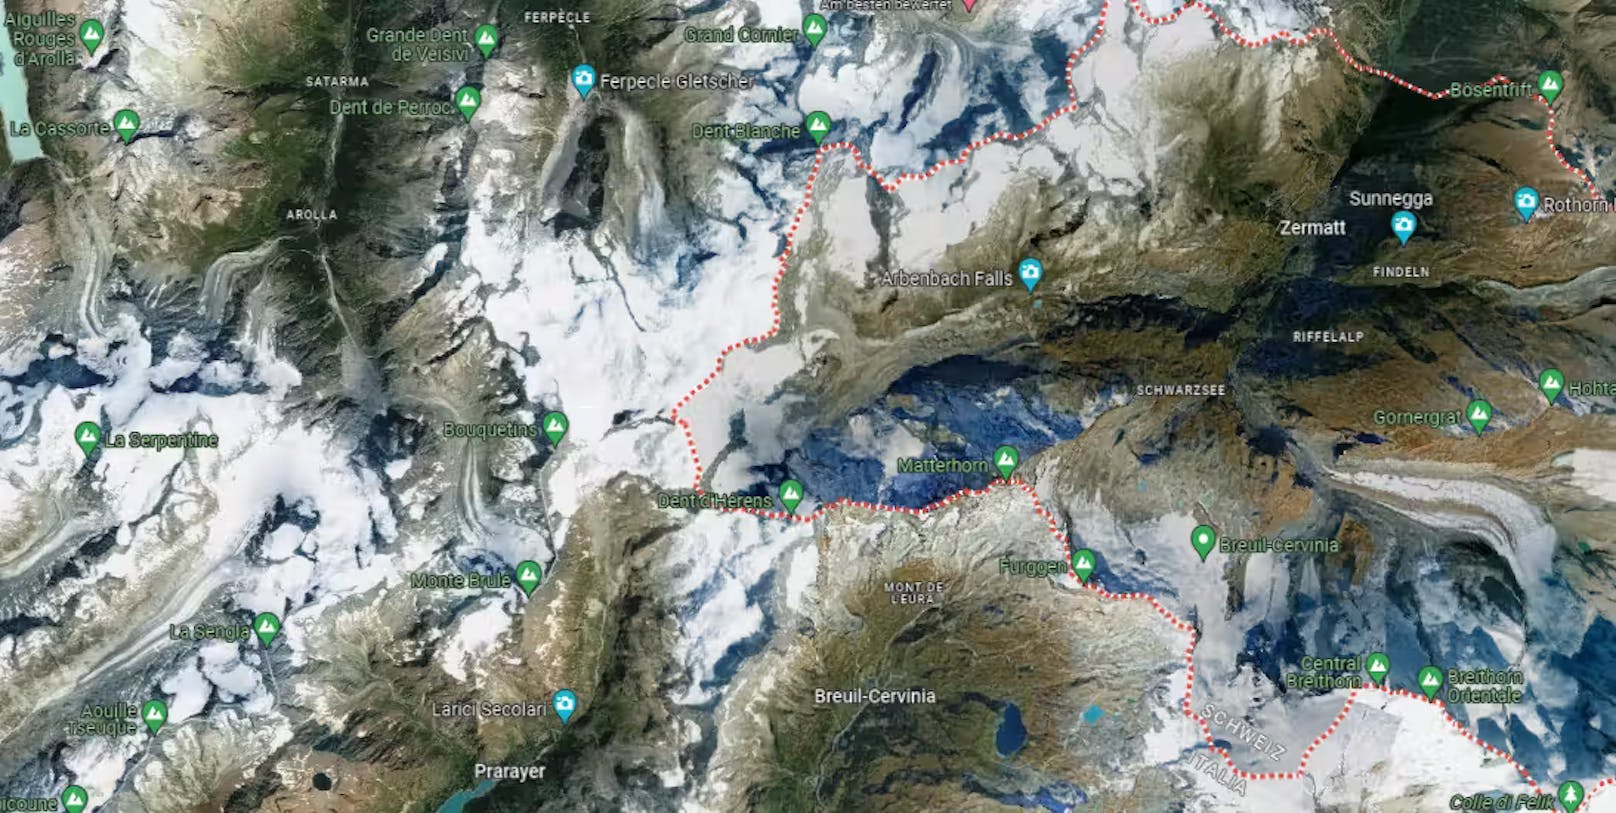 Die Skitourenroute verbindet die beiden Walliser Orte unweit der Grenze zu Italien.